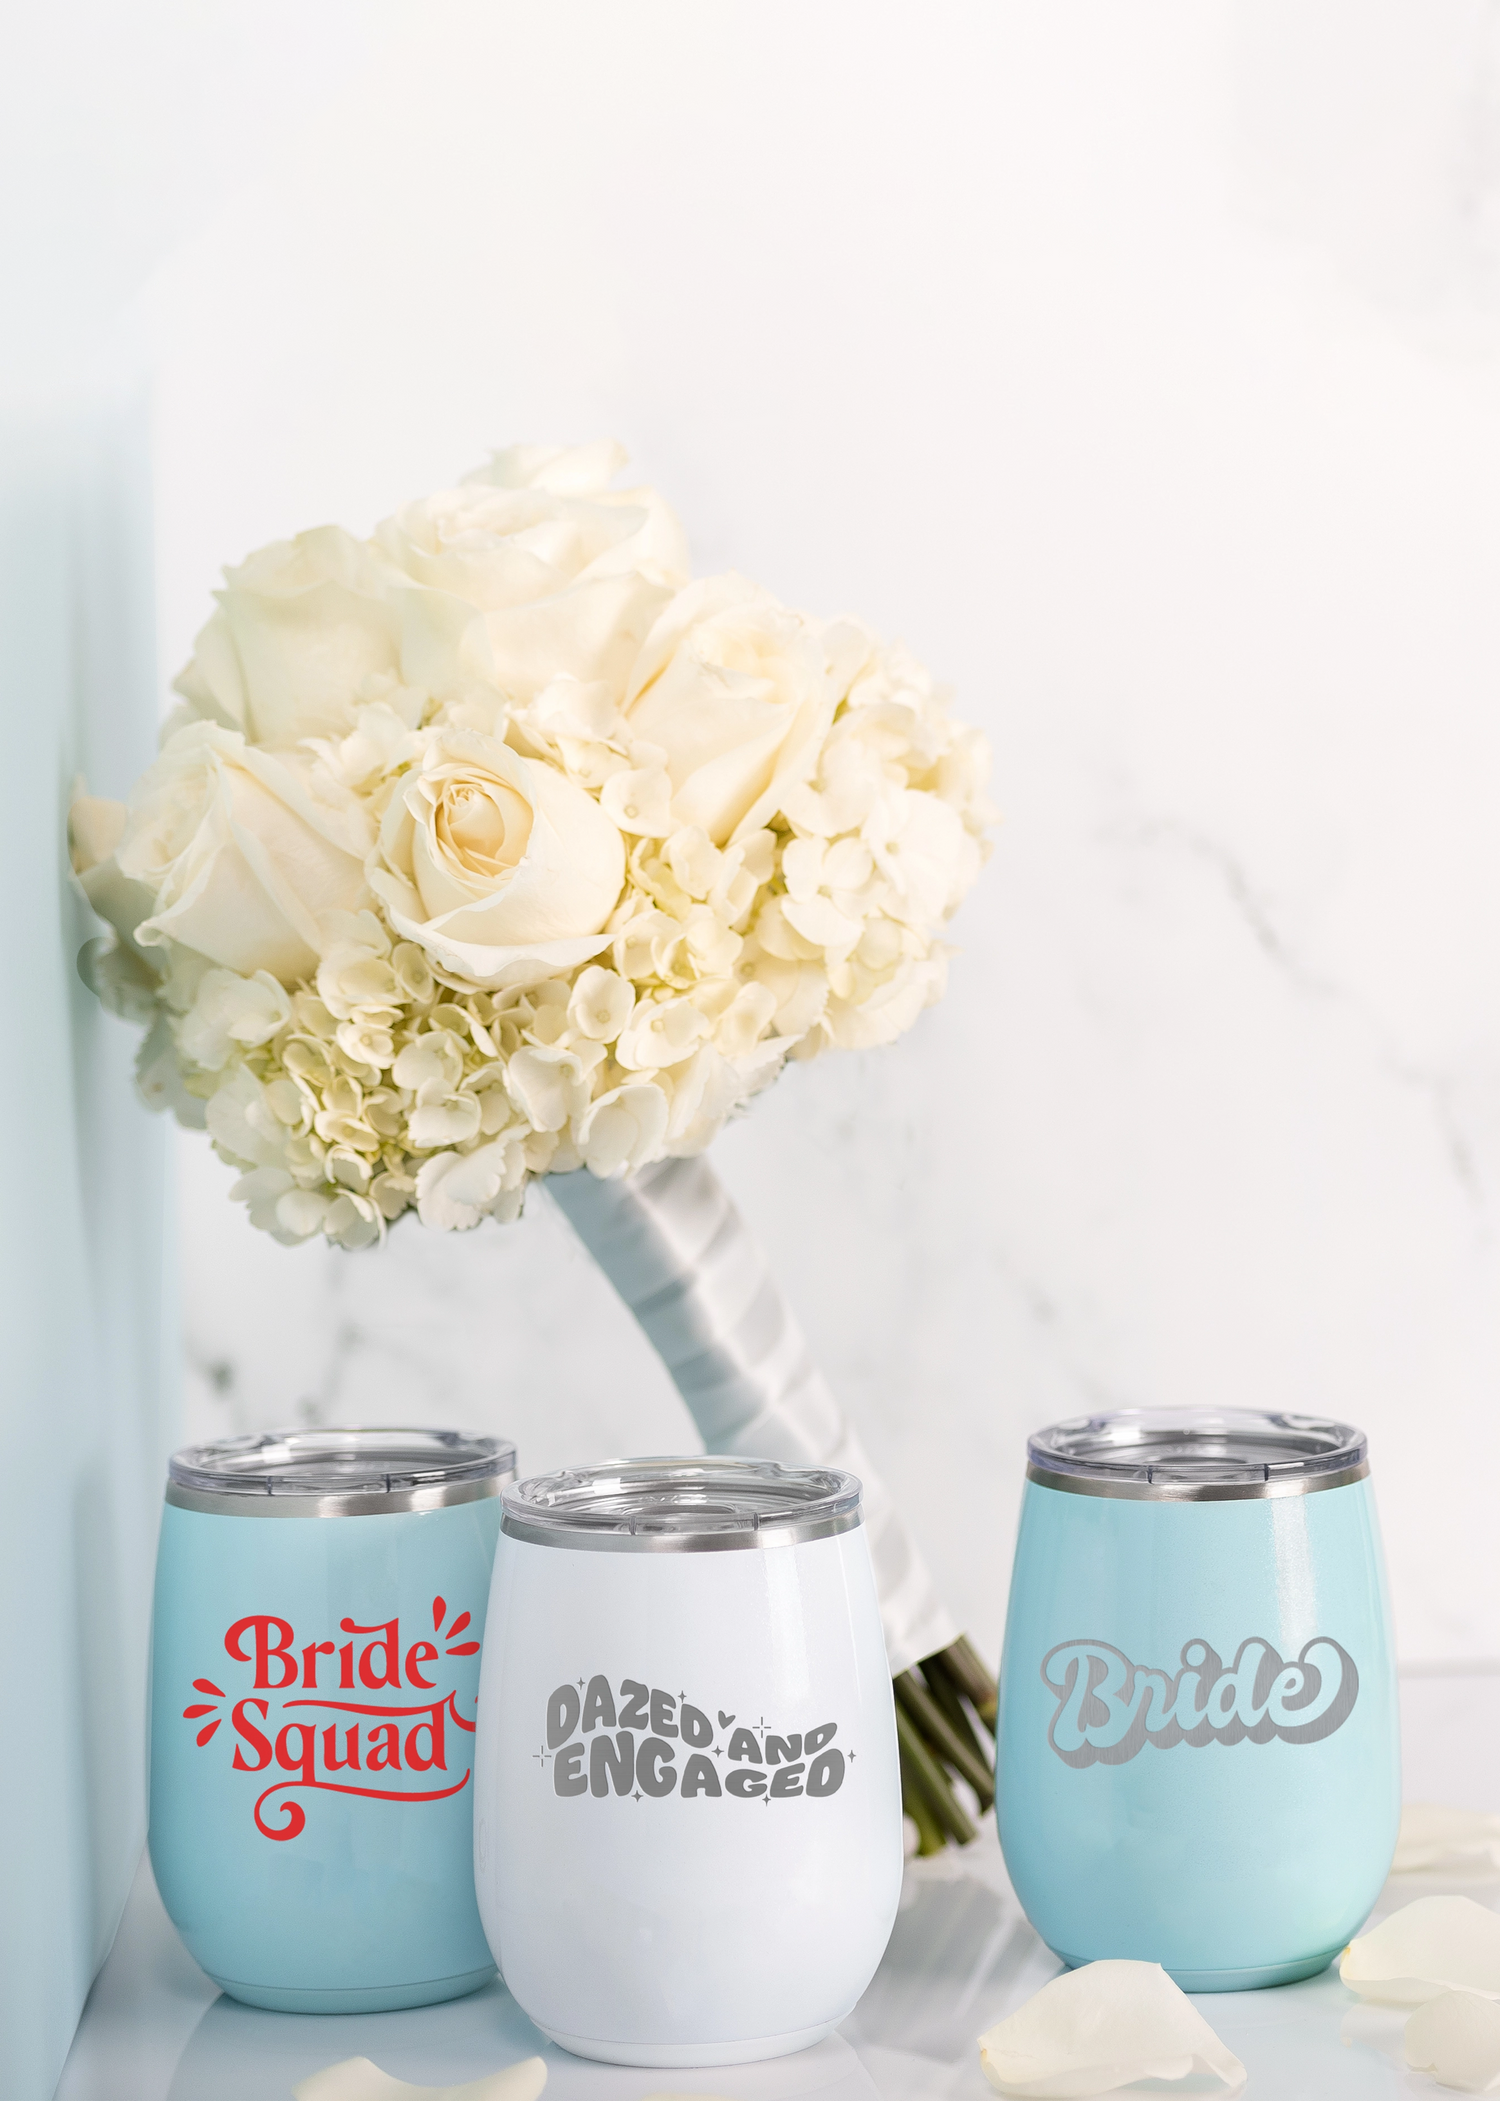 Custom Branding wedding season gifts, buy 4 get 5th free. Wine tumblers with bride designs. 